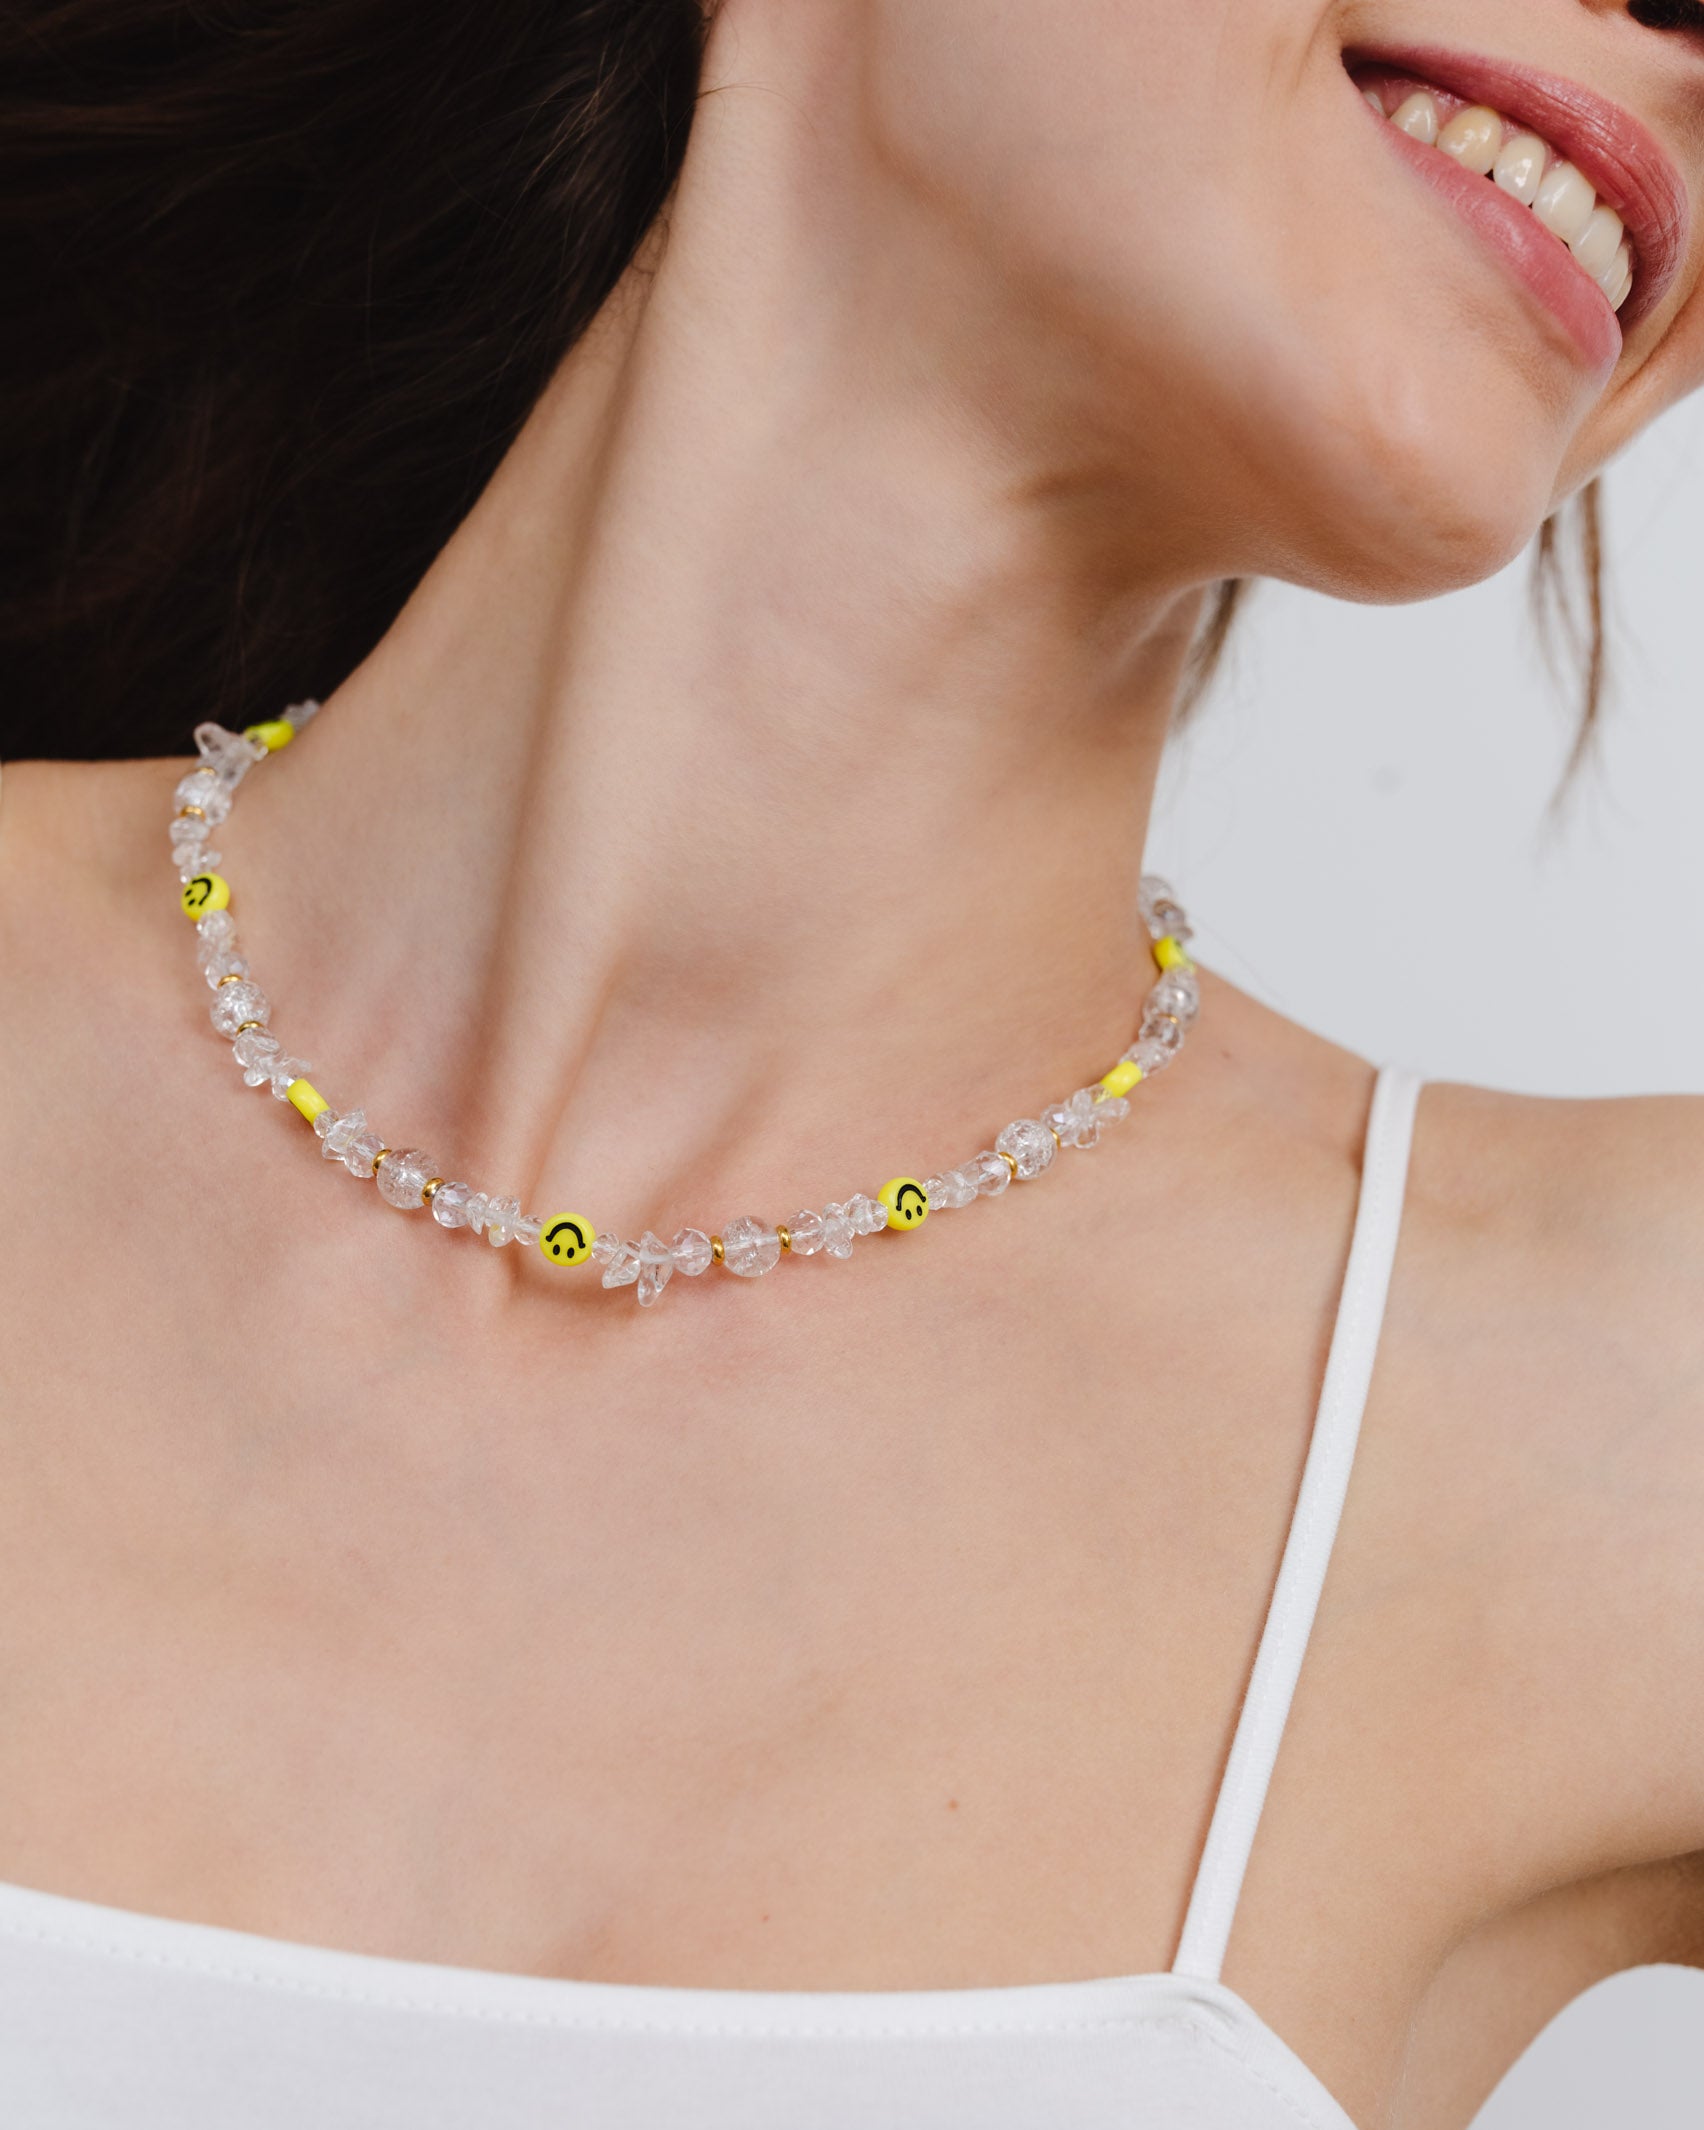 Kristallartige Perlenkette mit lächelnden Smileys - Broke + Schön#farbe_white